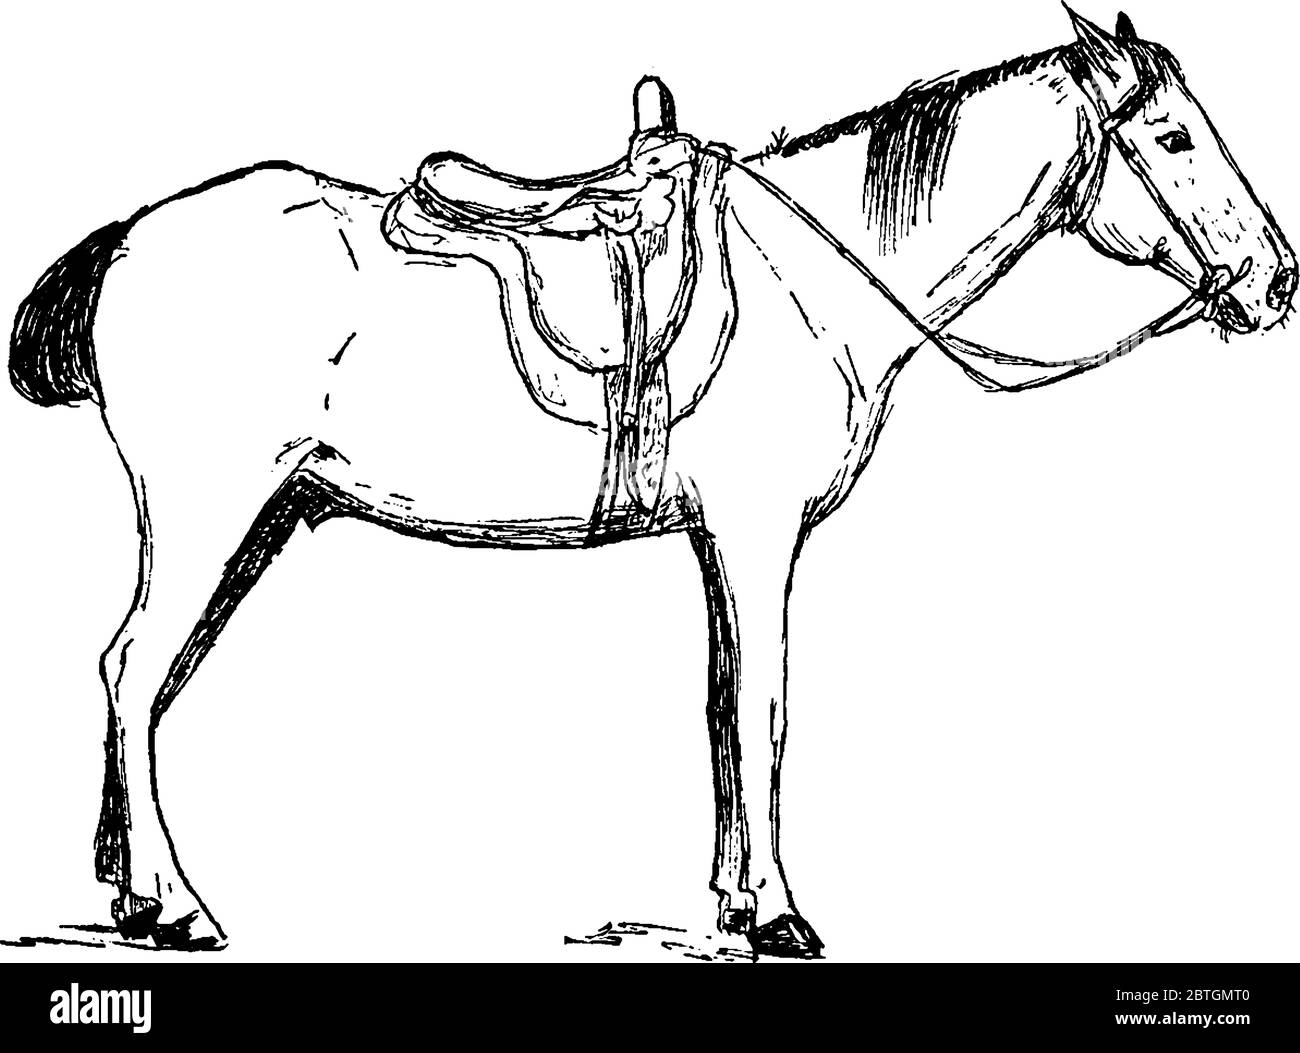 Un caballo doméstico utilizado para montar a caballo y el transporte. El caballo Equus ferus caballus es una de las dos subespecies existentes de Equus ferus. Es un ungul de dedos impares Ilustración del Vector